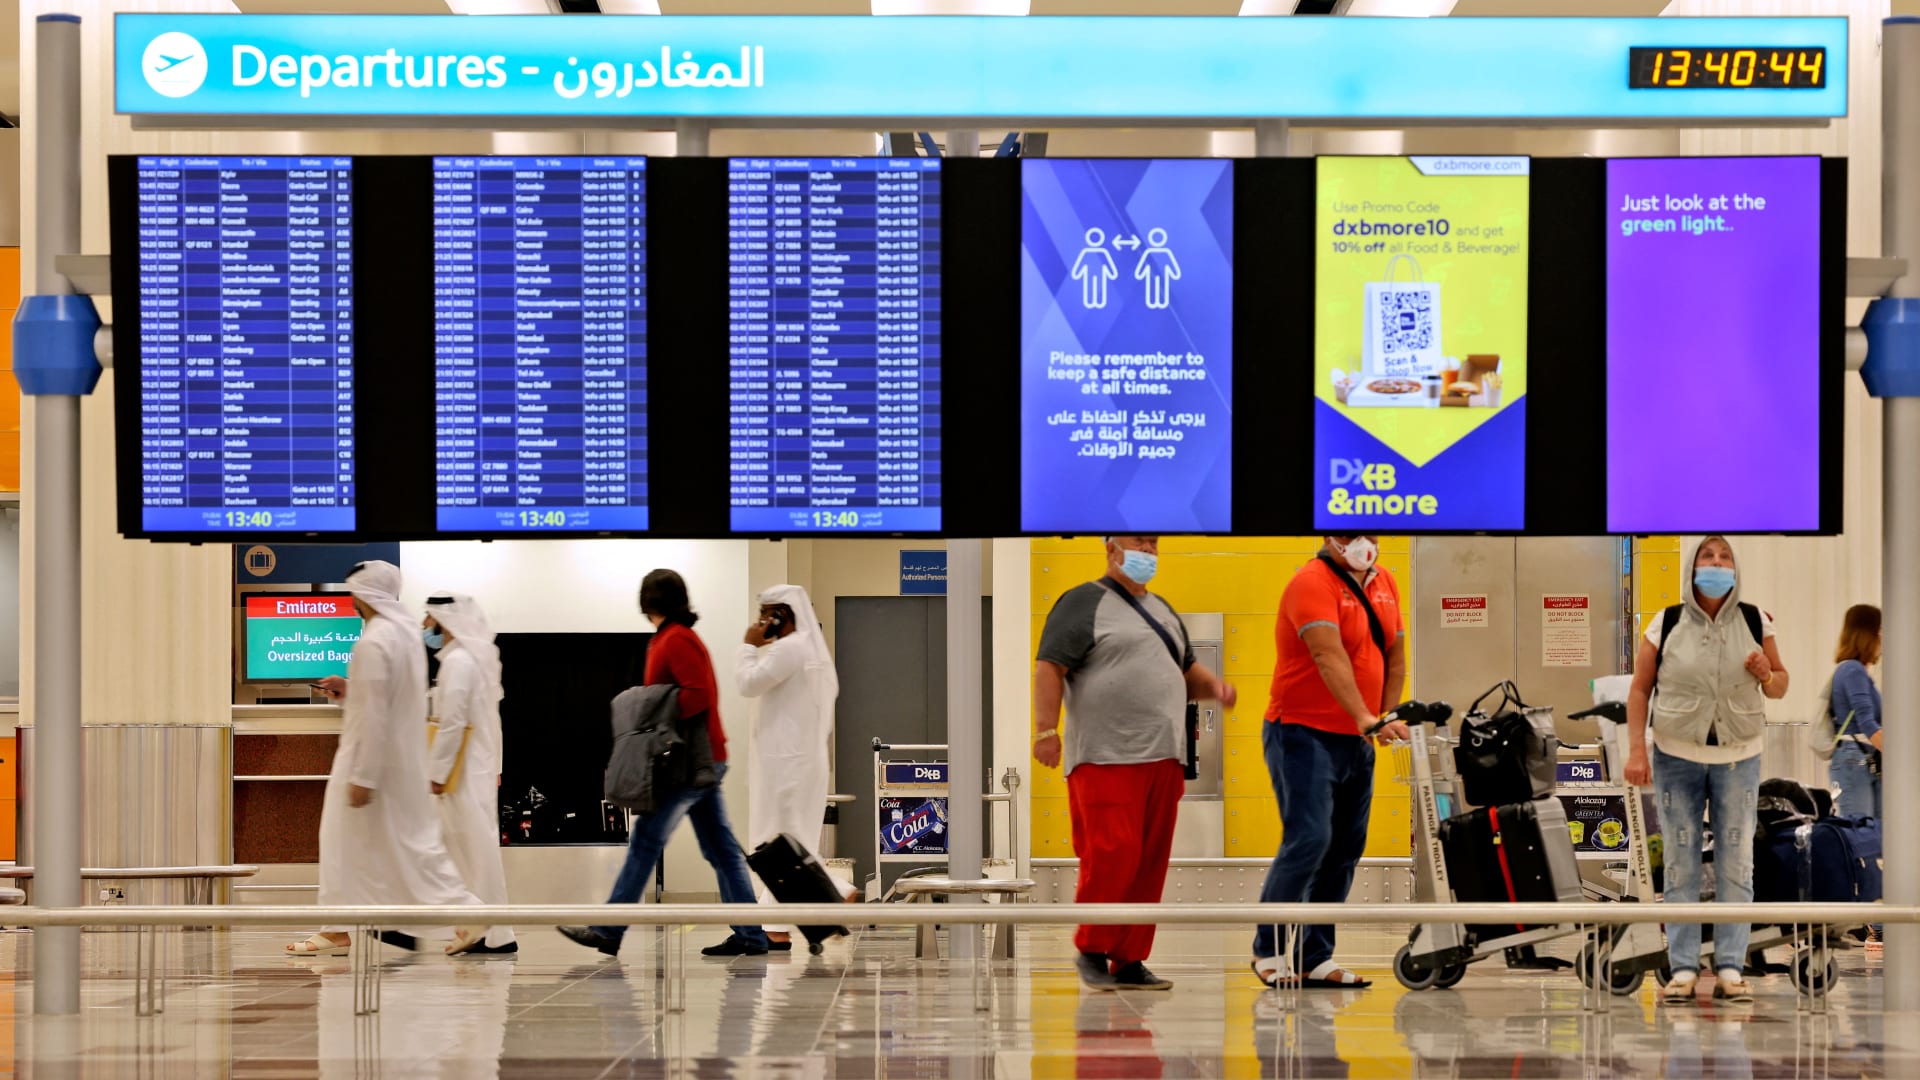 مطار دبي الدولي يحتل المرتبة الثانية في قائمة أكثر المطارات ازدحامًا 31